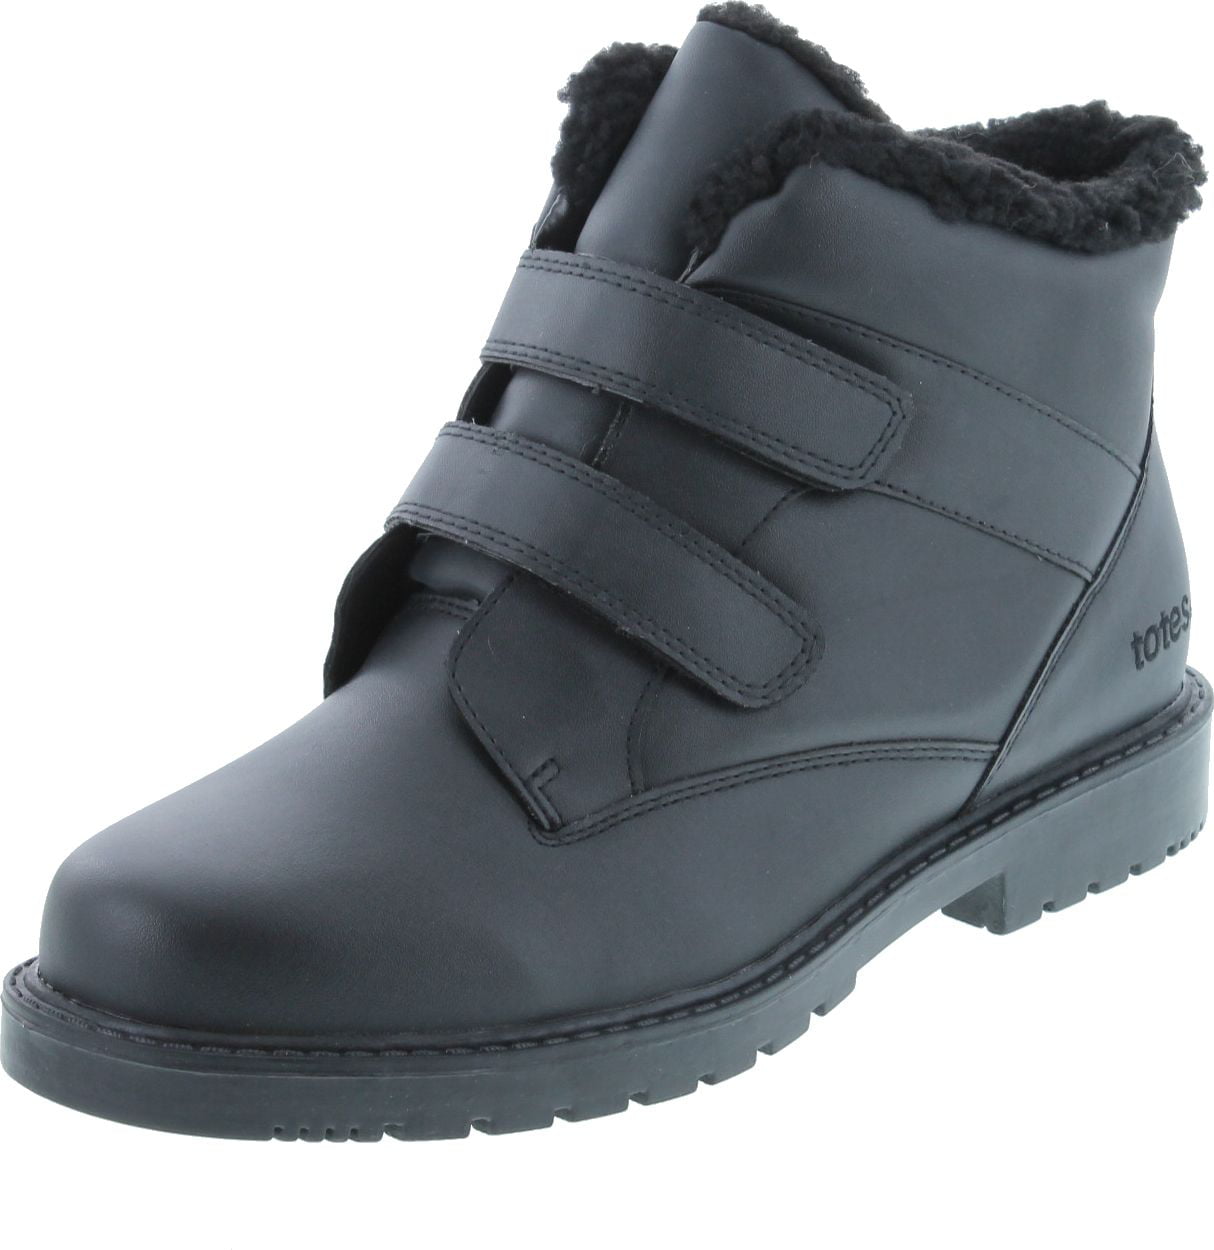 totes - Totes Mens Adjustable Waterproof Winter Boots - Walmart.com ...